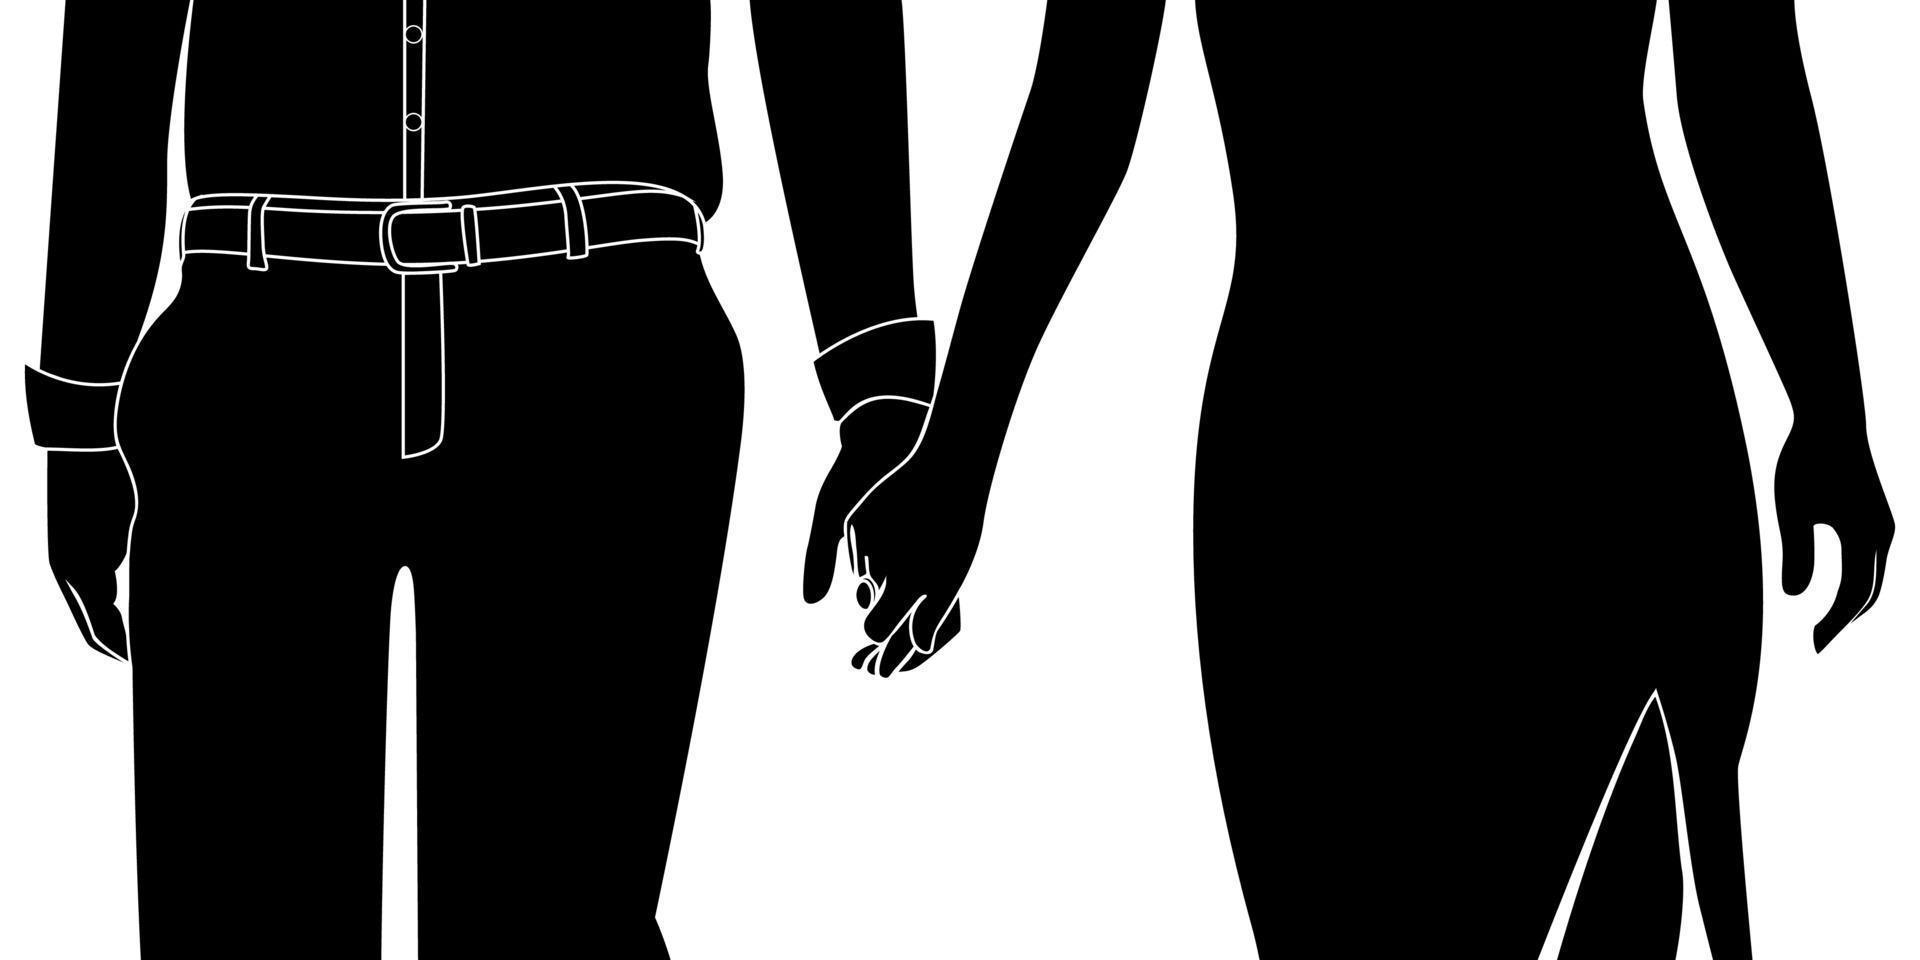 Schönes Paar Händchen haltend, romantisches Paar Charakter Silhouette Vector Illustration.